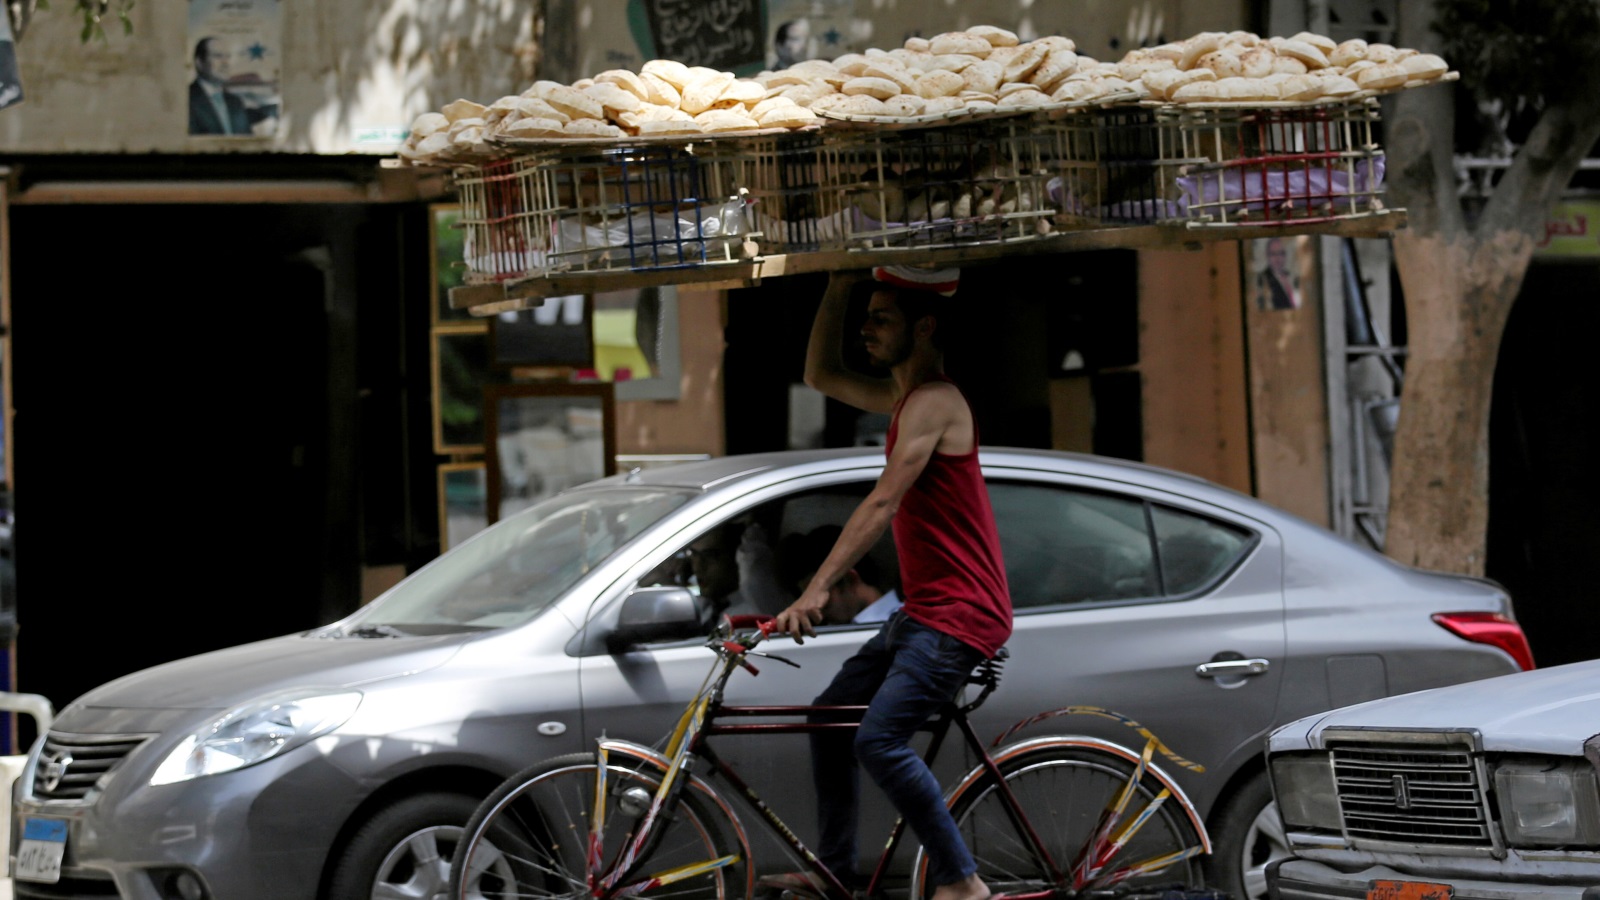 حرارة الصيف العالية في مصر تزيد من معاناة العاملين بالمخابز 